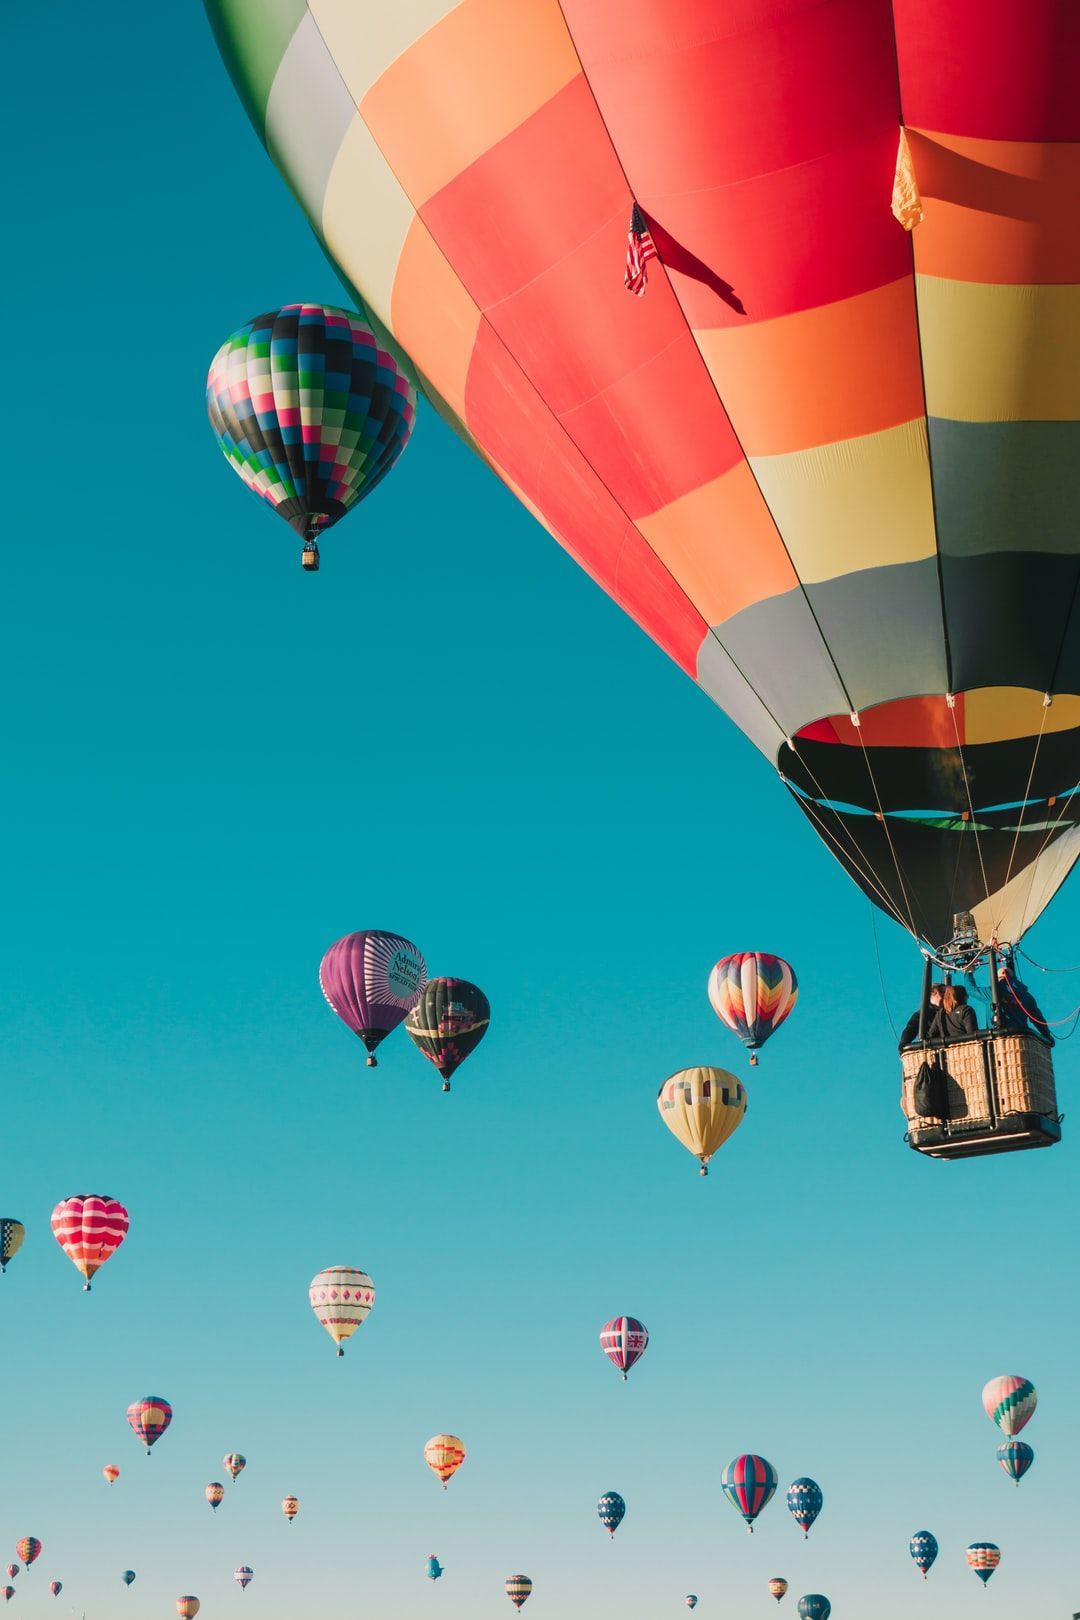 A colorful hot air balloon festival - Hot air balloons